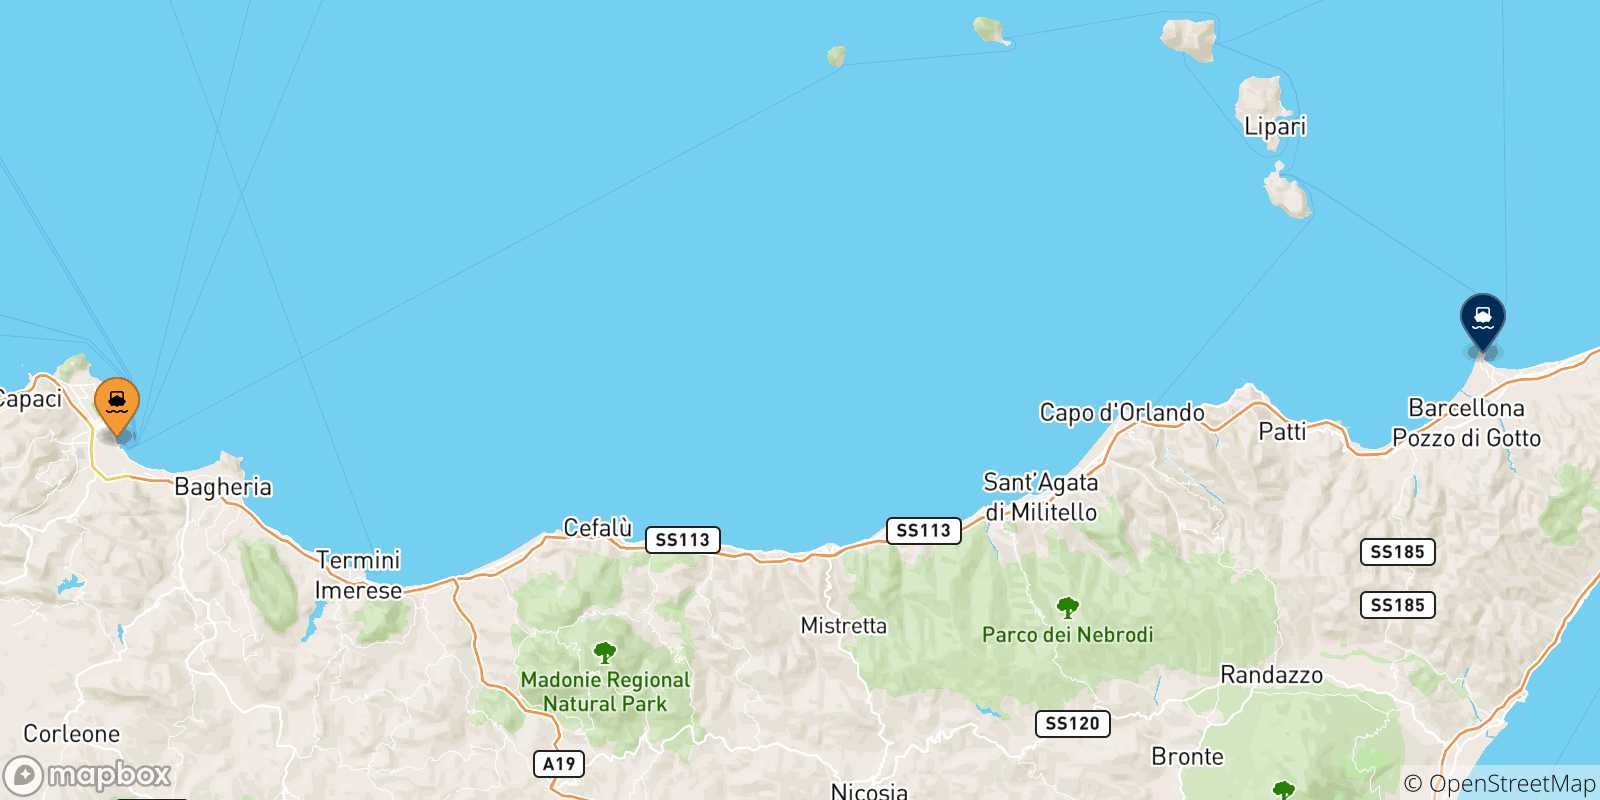 Mappa delle possibili rotte tra Palermo e la Sicilia